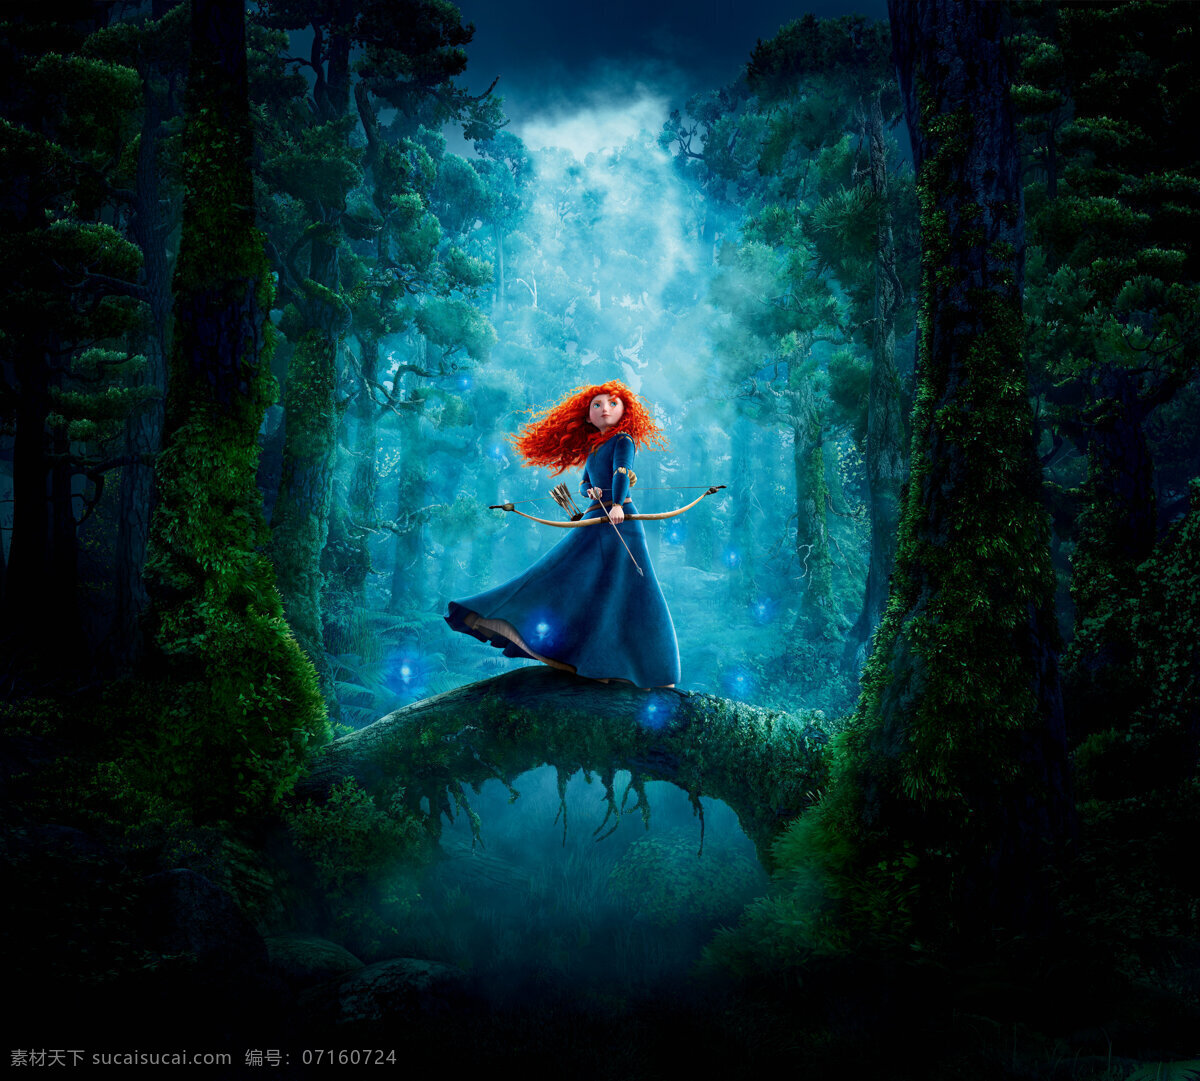 勇敢传说 幻险森林 勇敢的公主 迪士尼 动画电影 海报 电影海报剧照 动画卡通电影